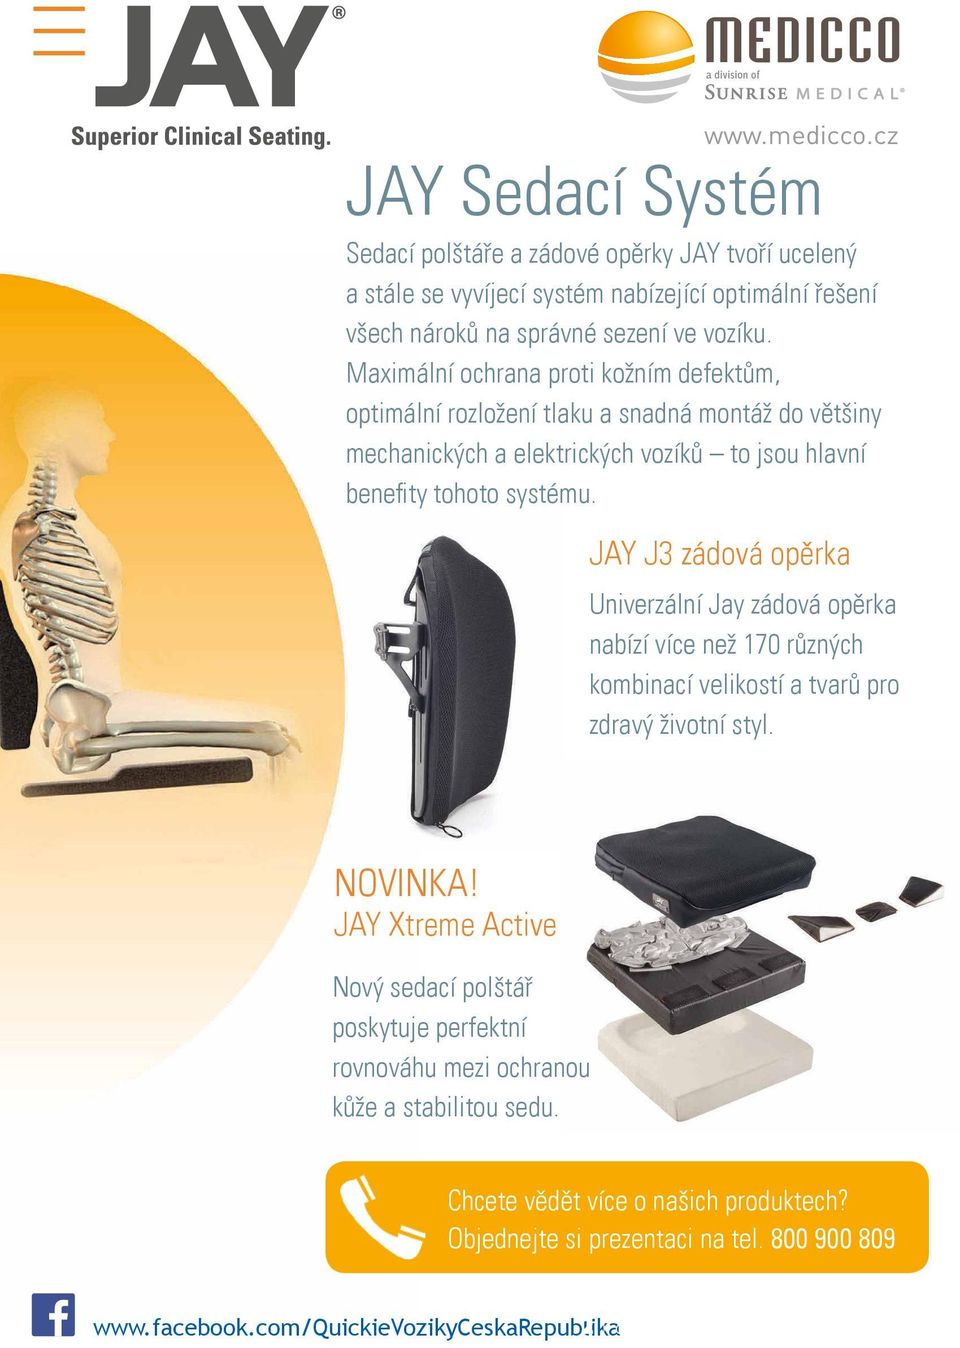 JAY J3 zádová opěrka Univerzální Jay zádová opěrka nabízí více než 170 různých kombinací velikostí a tvarů pro zdravý životní styl. NOVINKA!